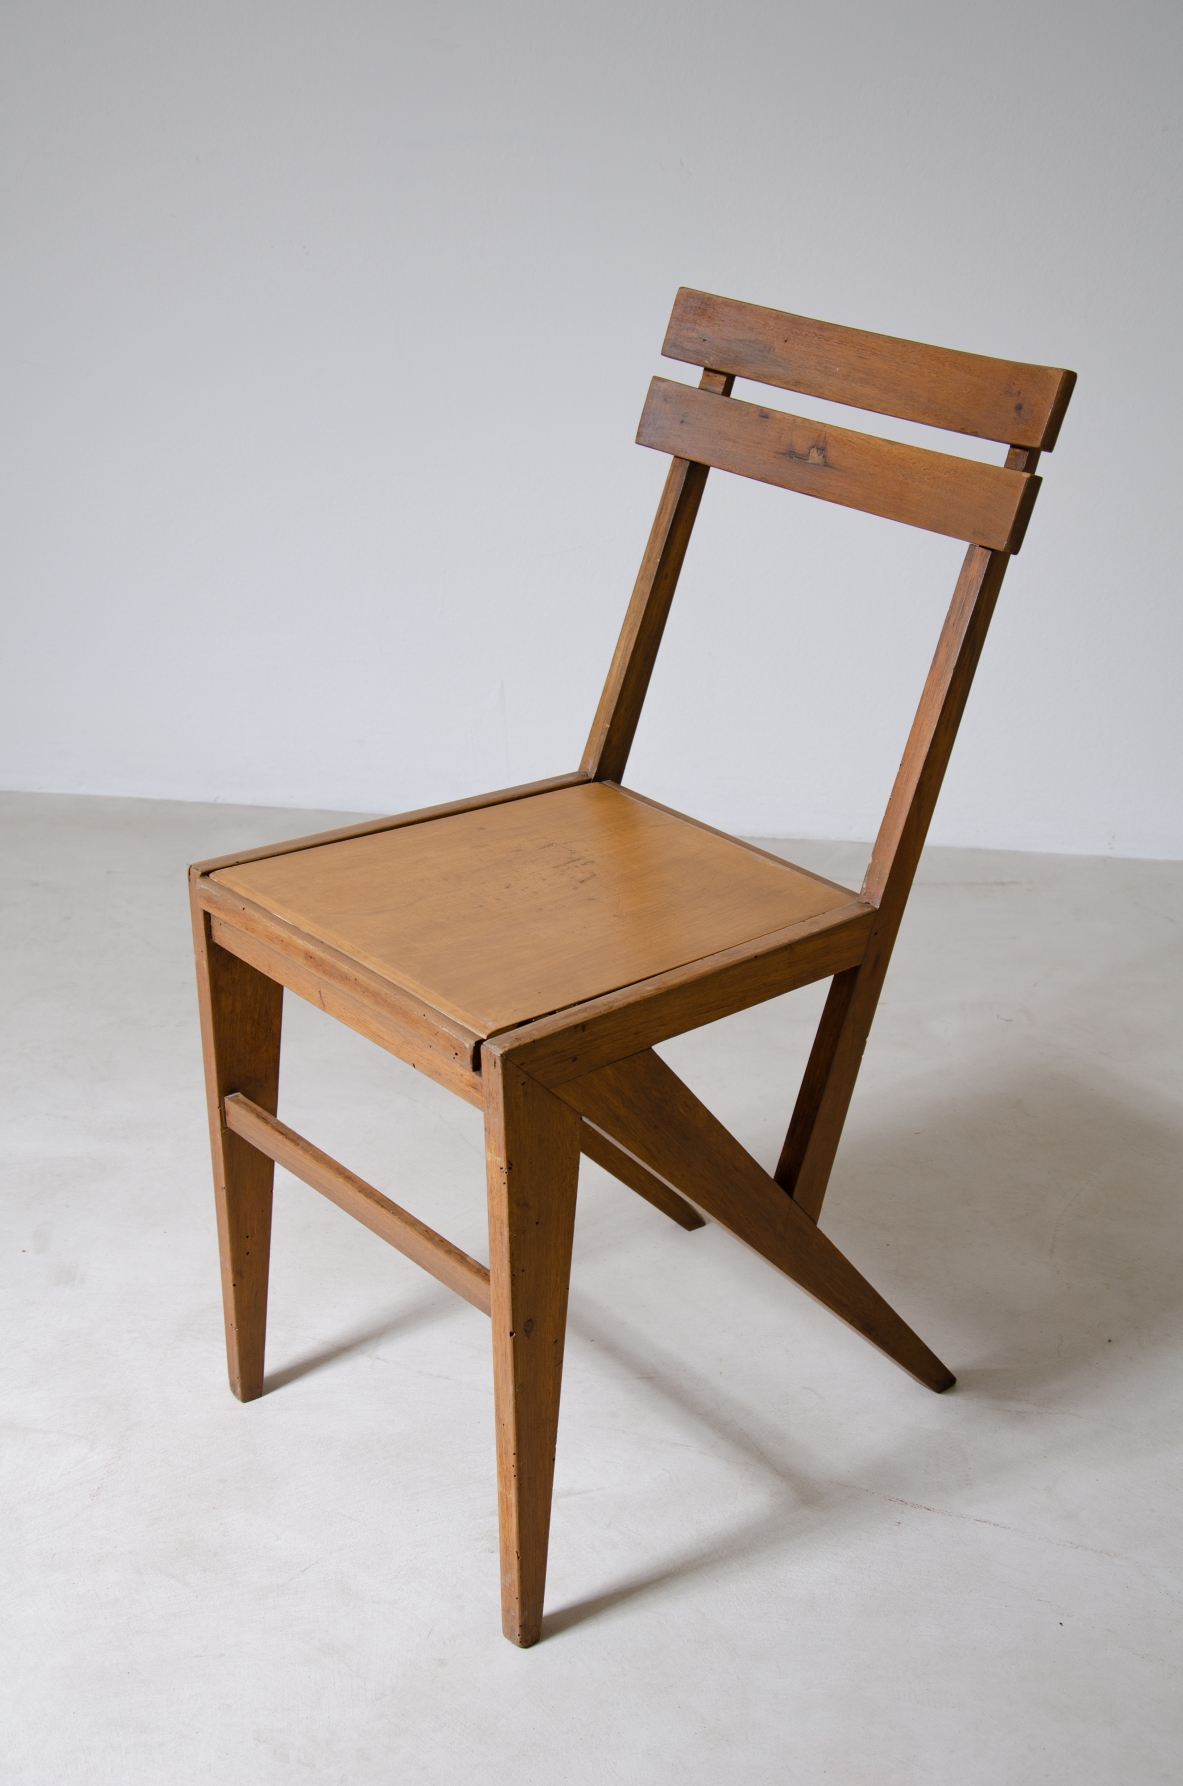 Coppia di sedie moderniste in legno.  Manifattura italiana, anni '50.